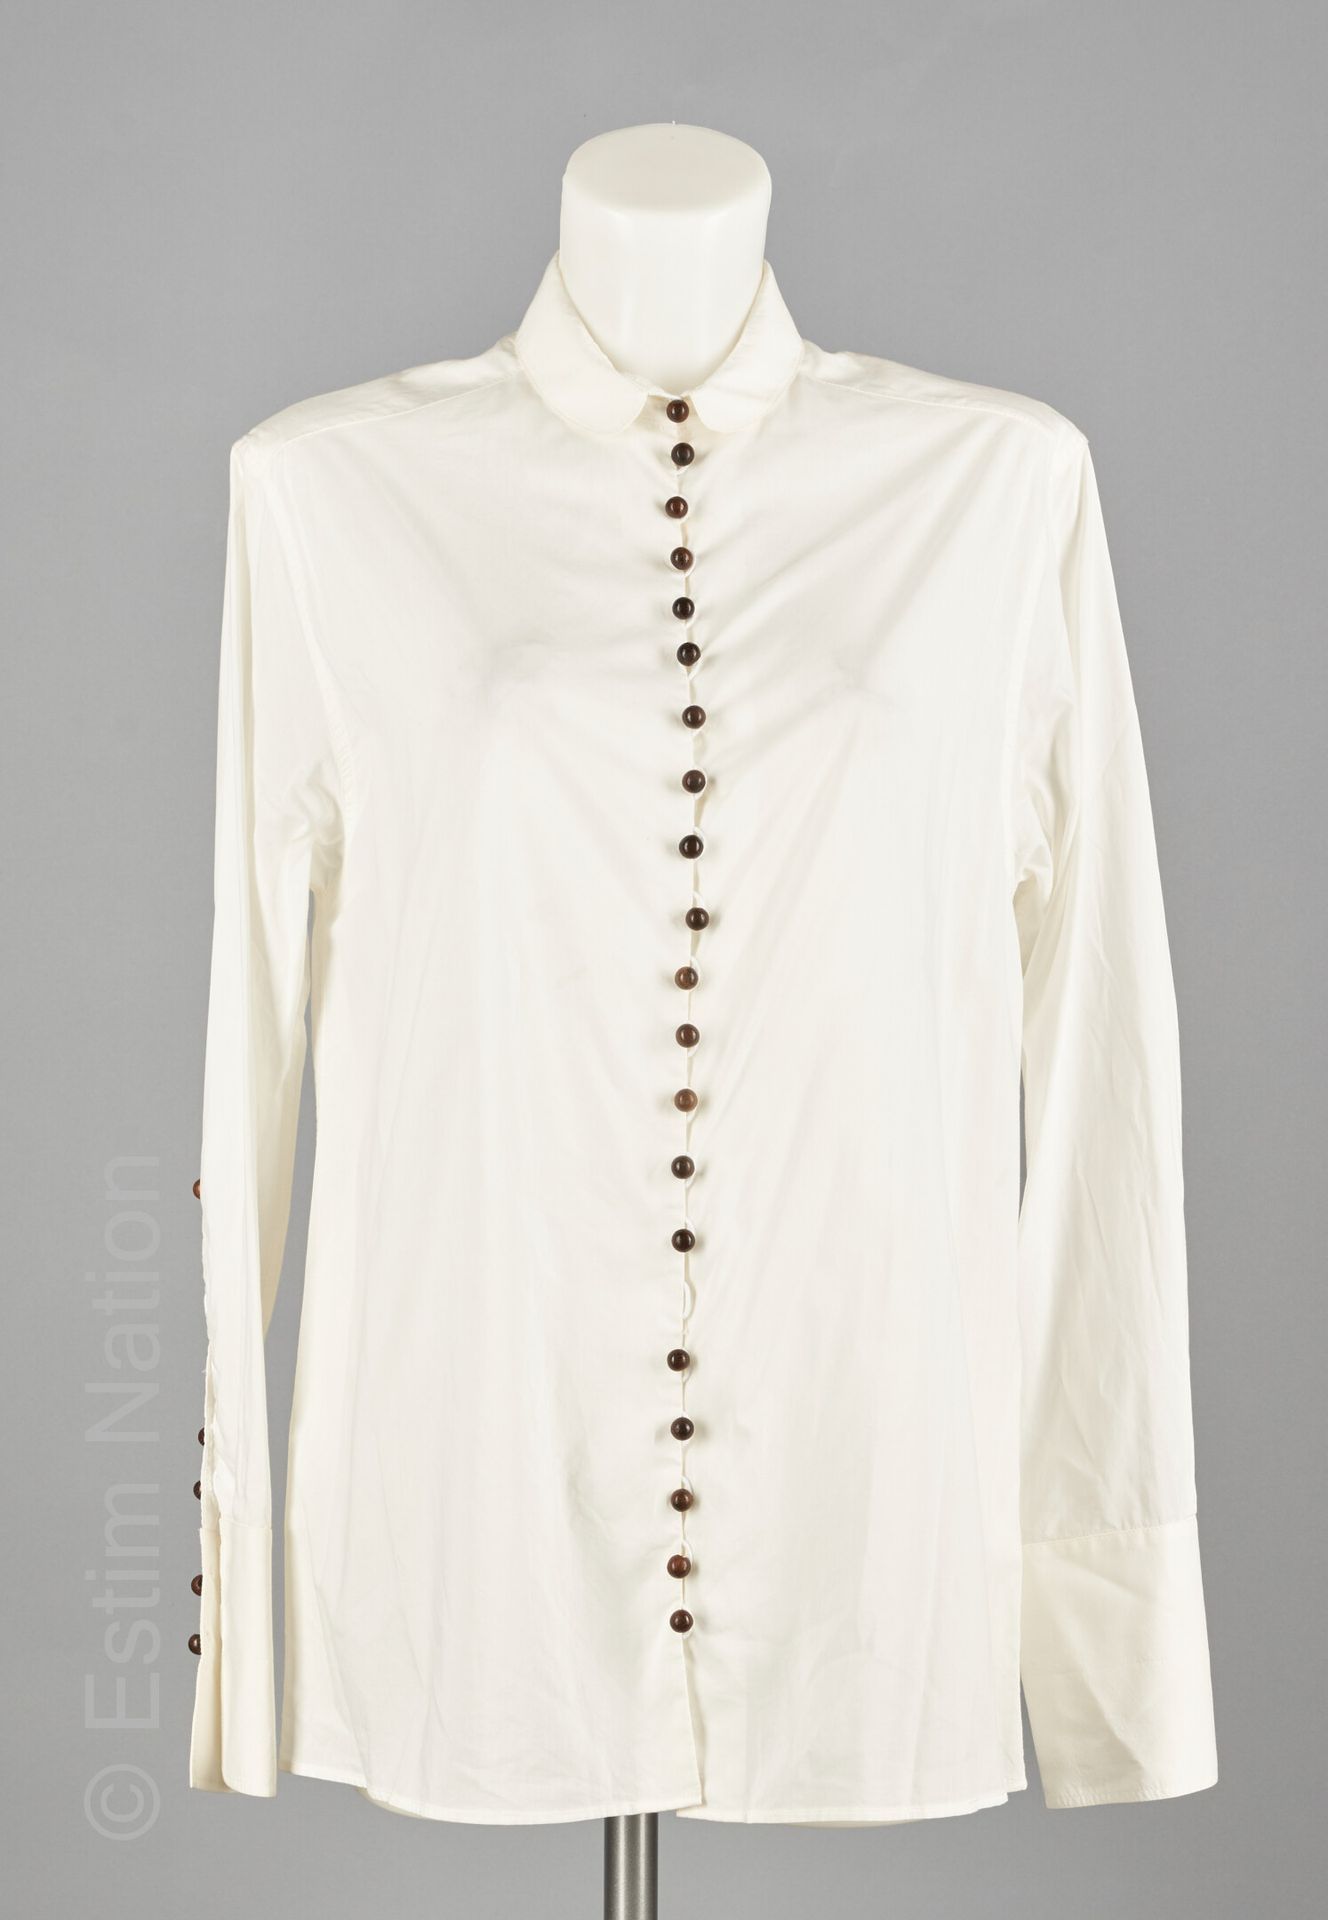 GIVENCHY TUNIQUE en coton blanc, simple boutonnage boule en bois, rappel sur les&hellip;